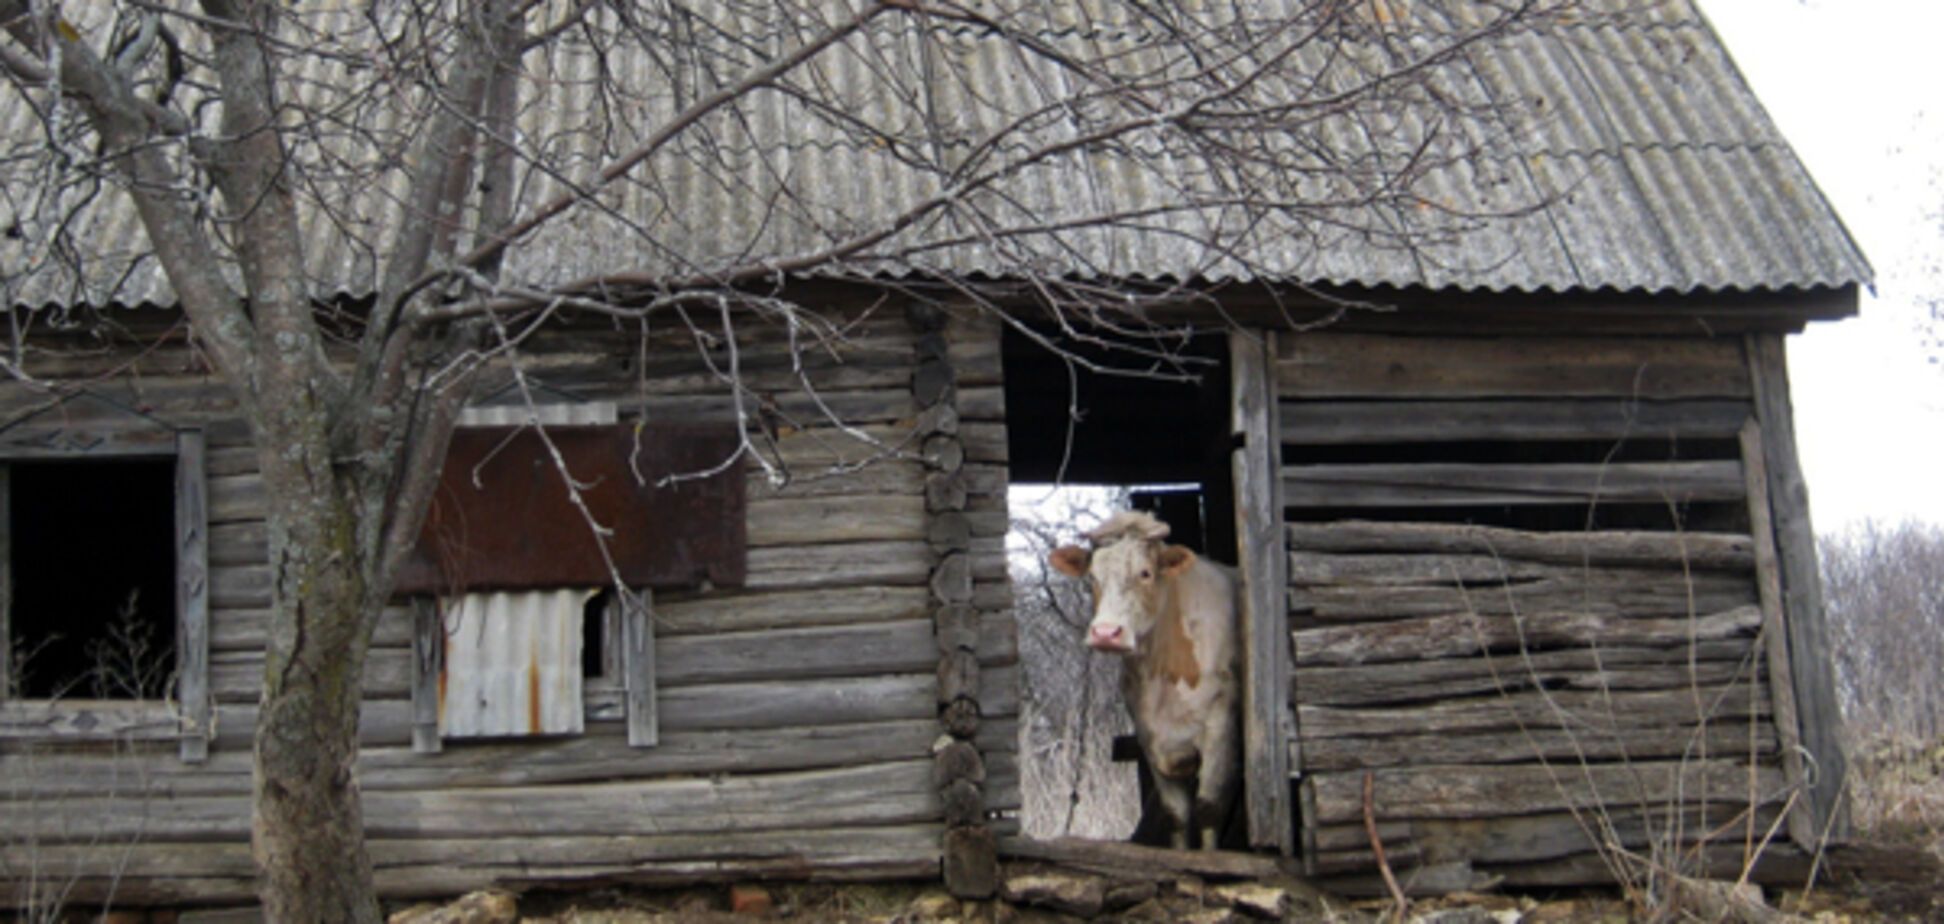 'Мама, они живут в сараях!' Маленькую украинку испугали фото российской деревни